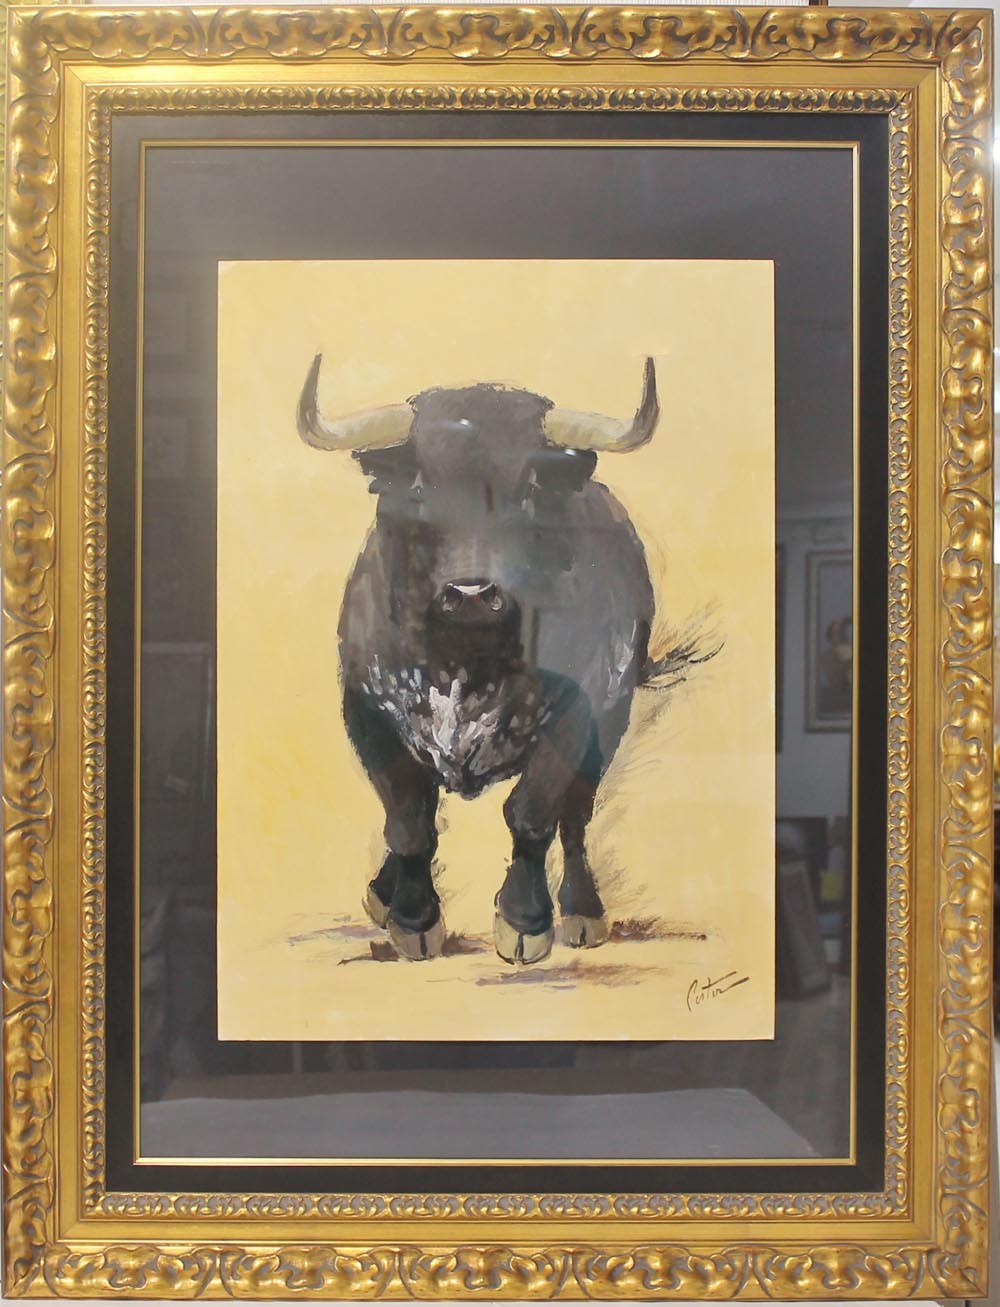 Enrique Pastor: That bull.